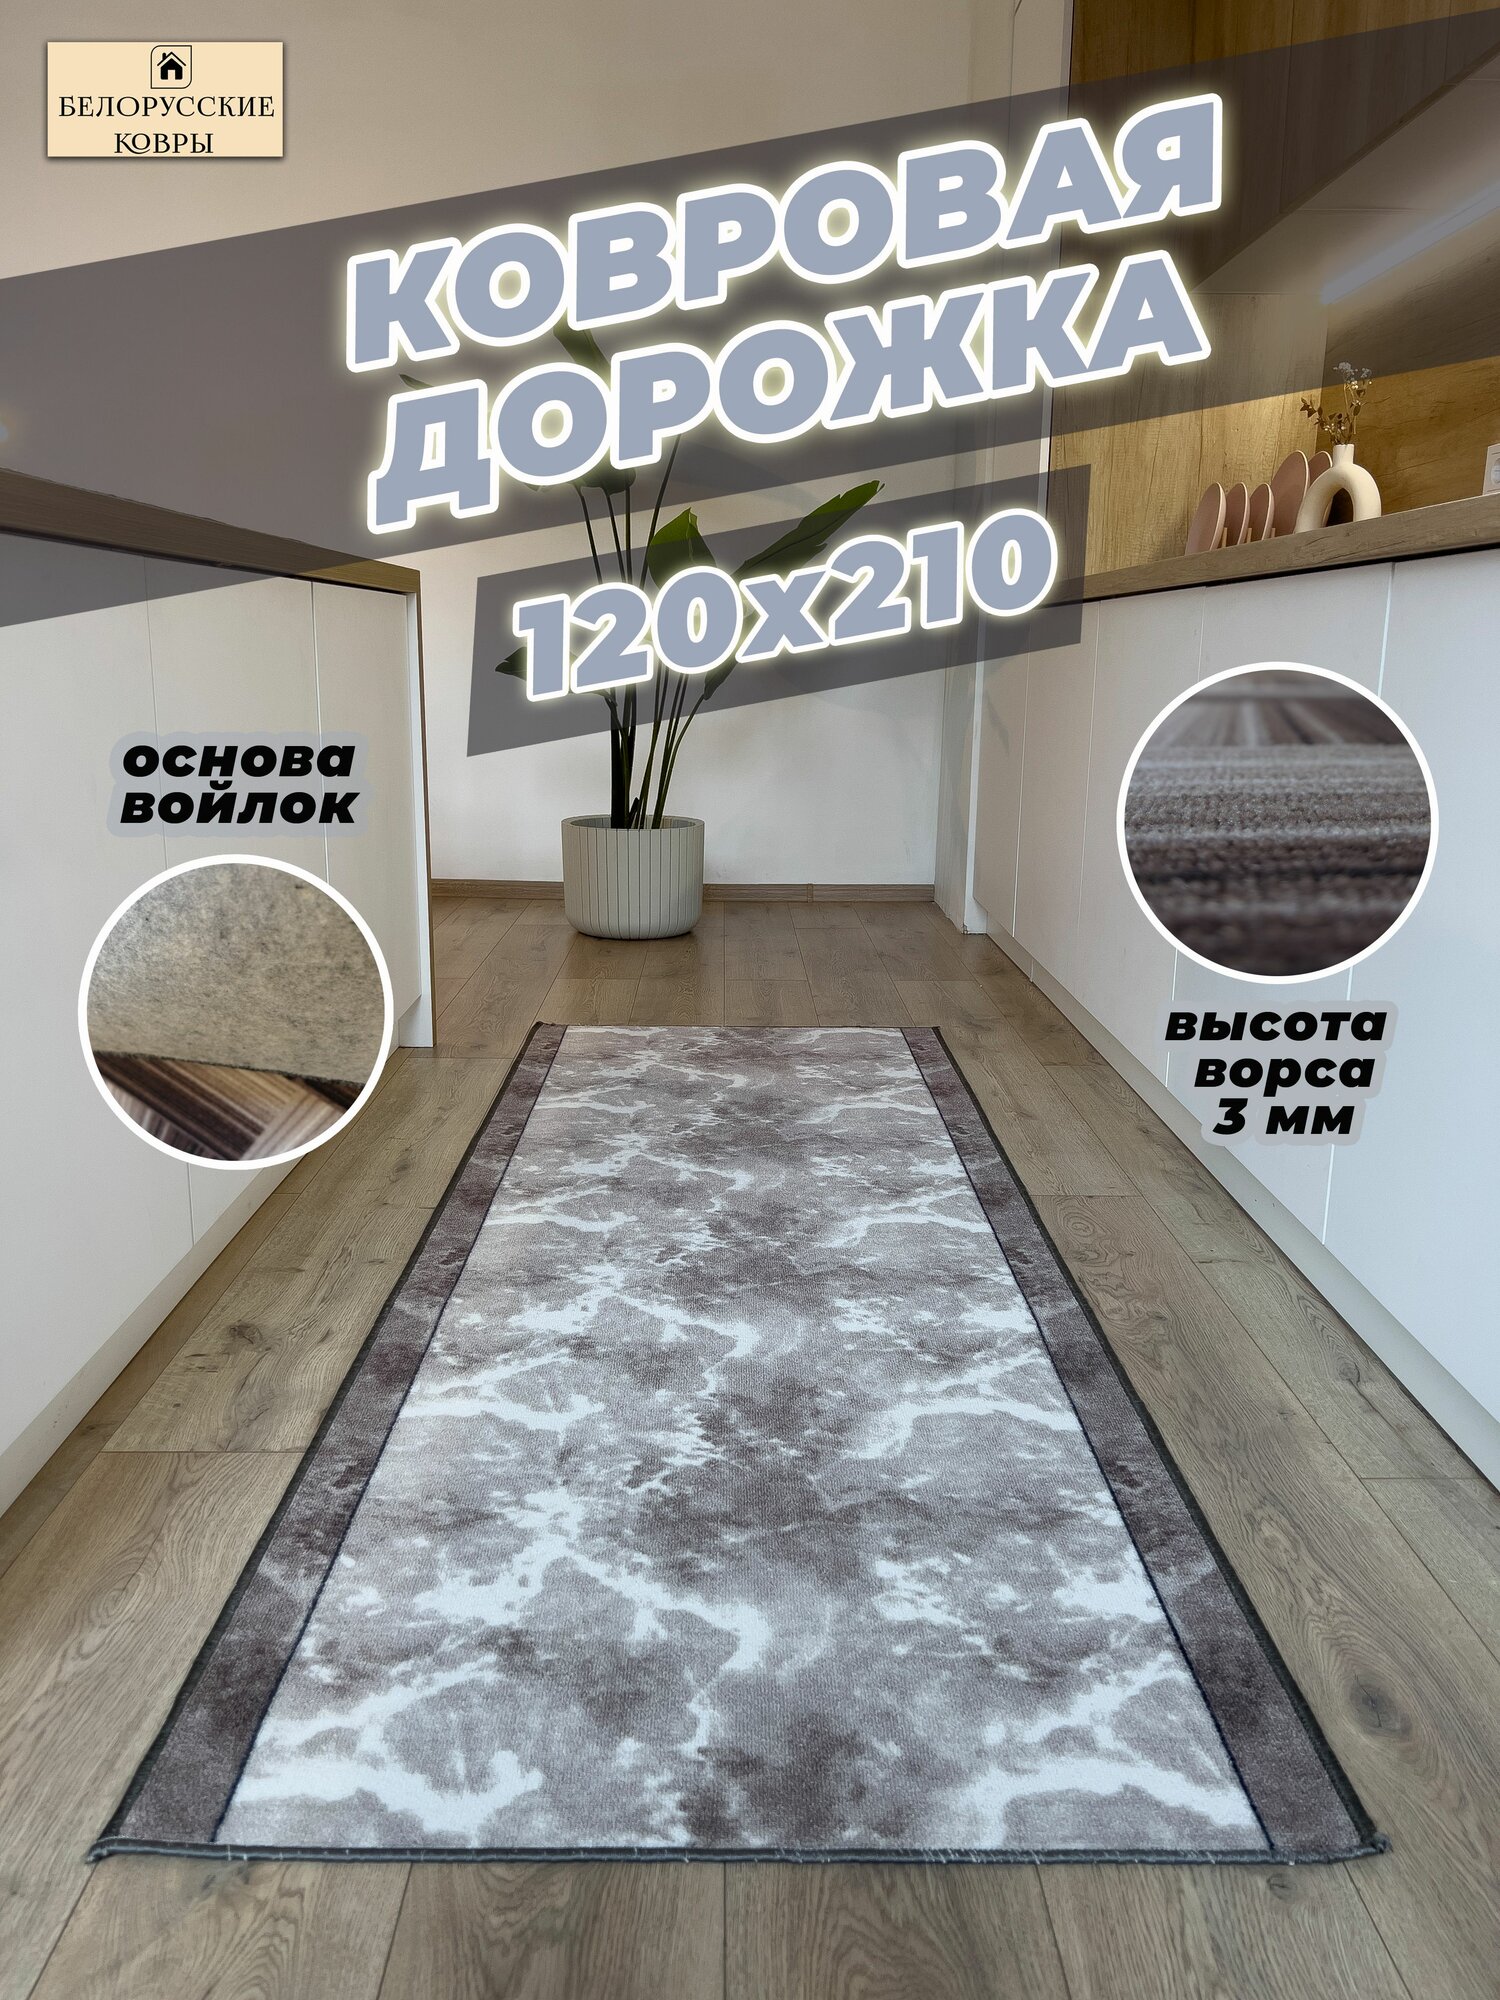 Белорусские ковры ковровая дорожка 120х210 см./12х21 м.